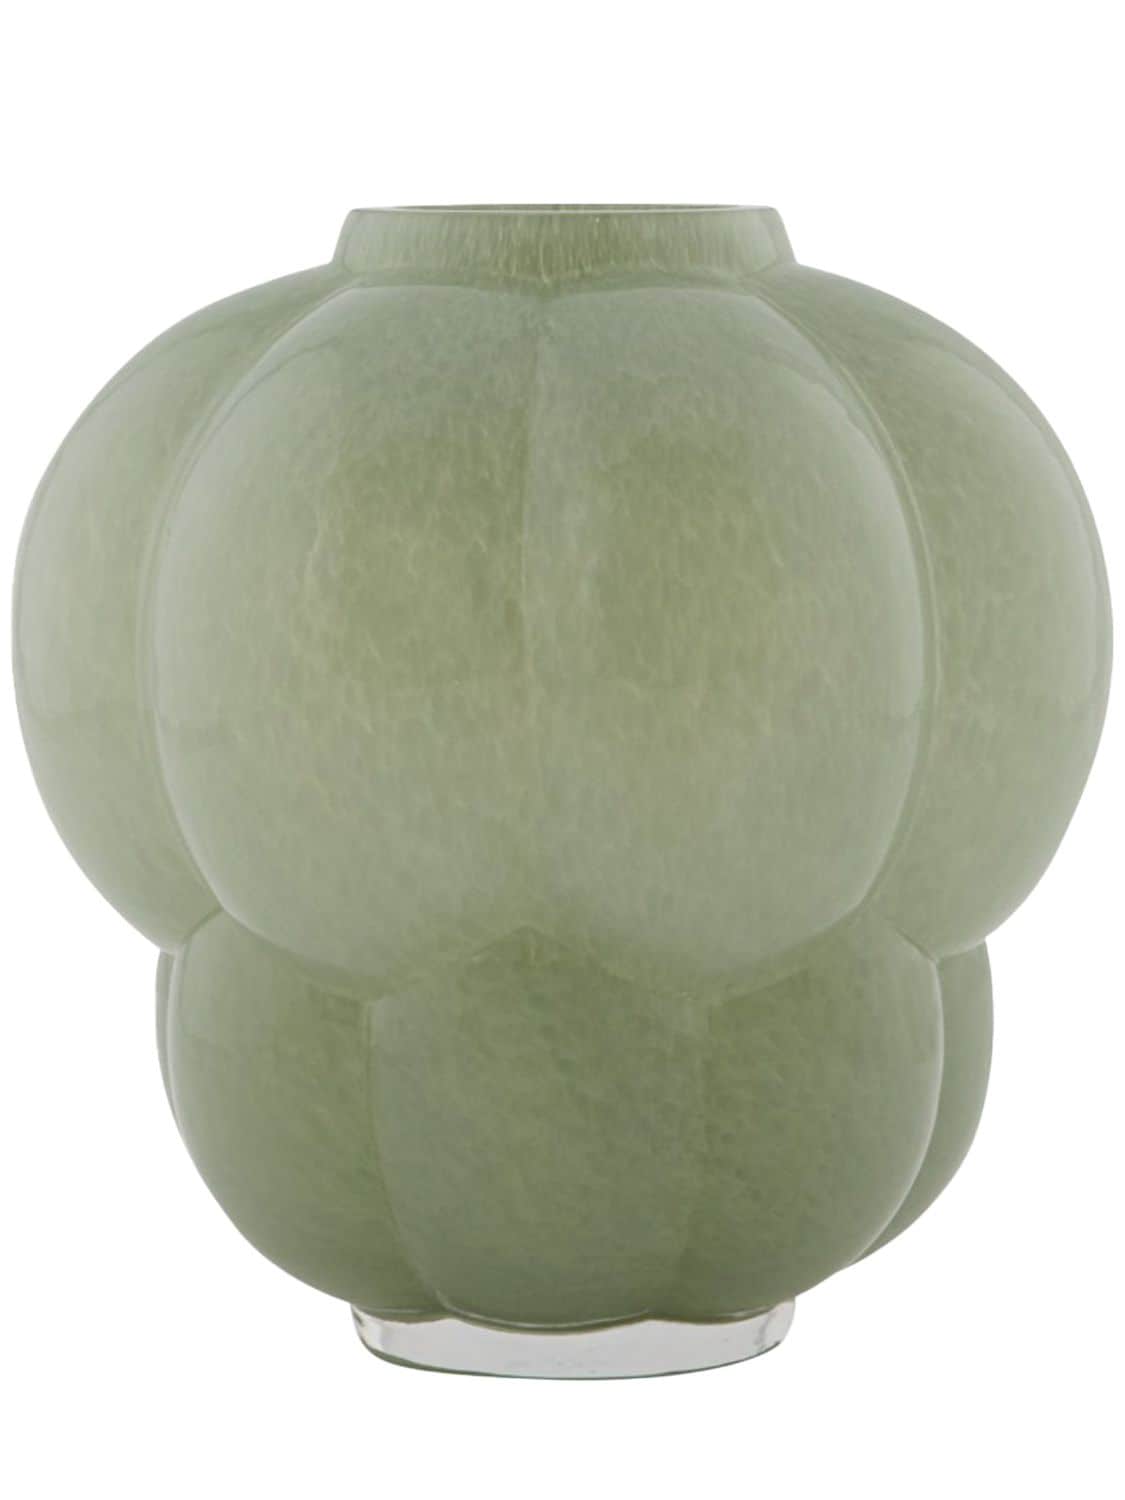 Aytm Uva Glass Vase In Green